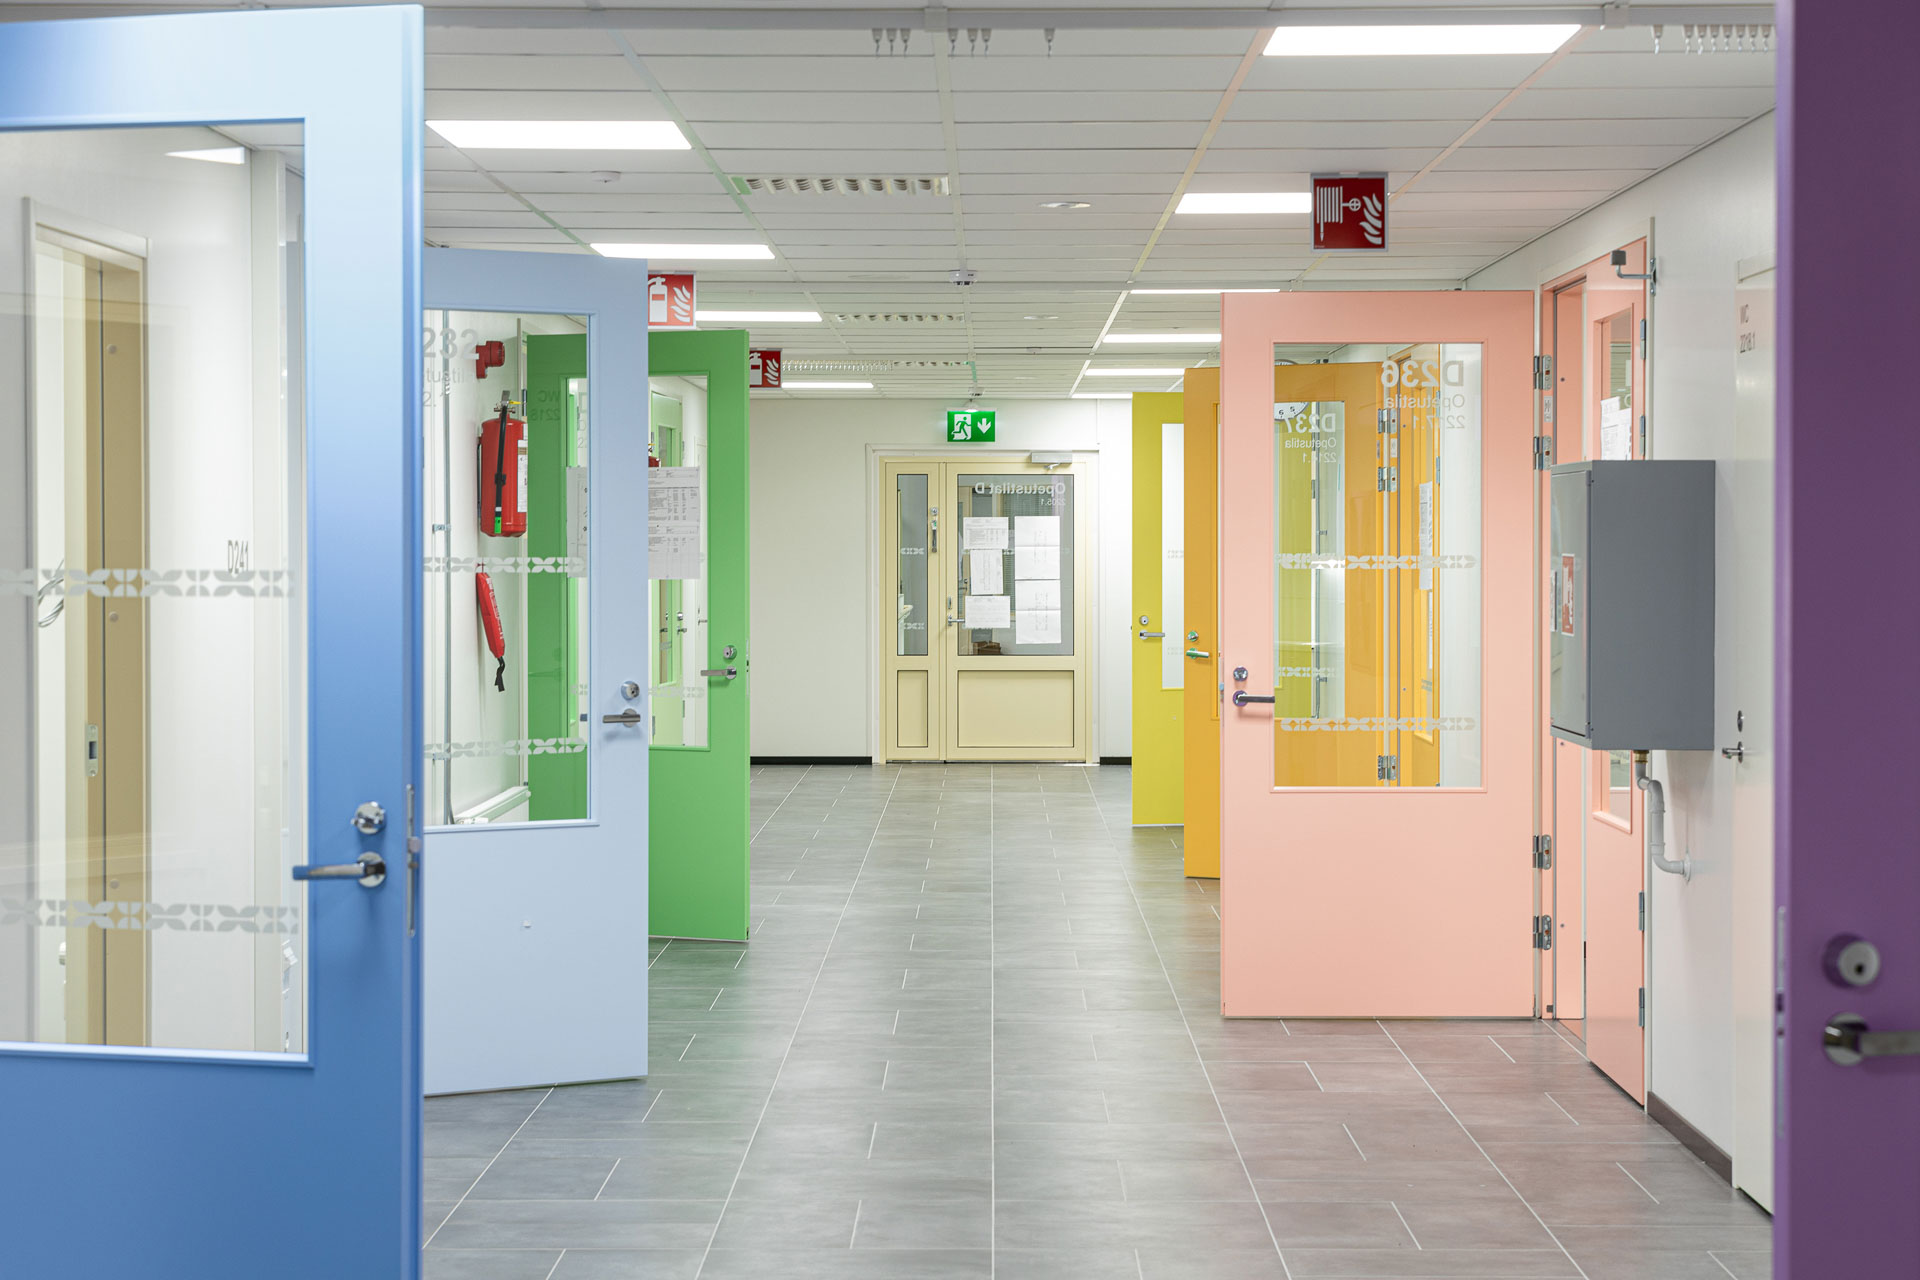 Vihannin koulukeskuksen värikkäitä ovia